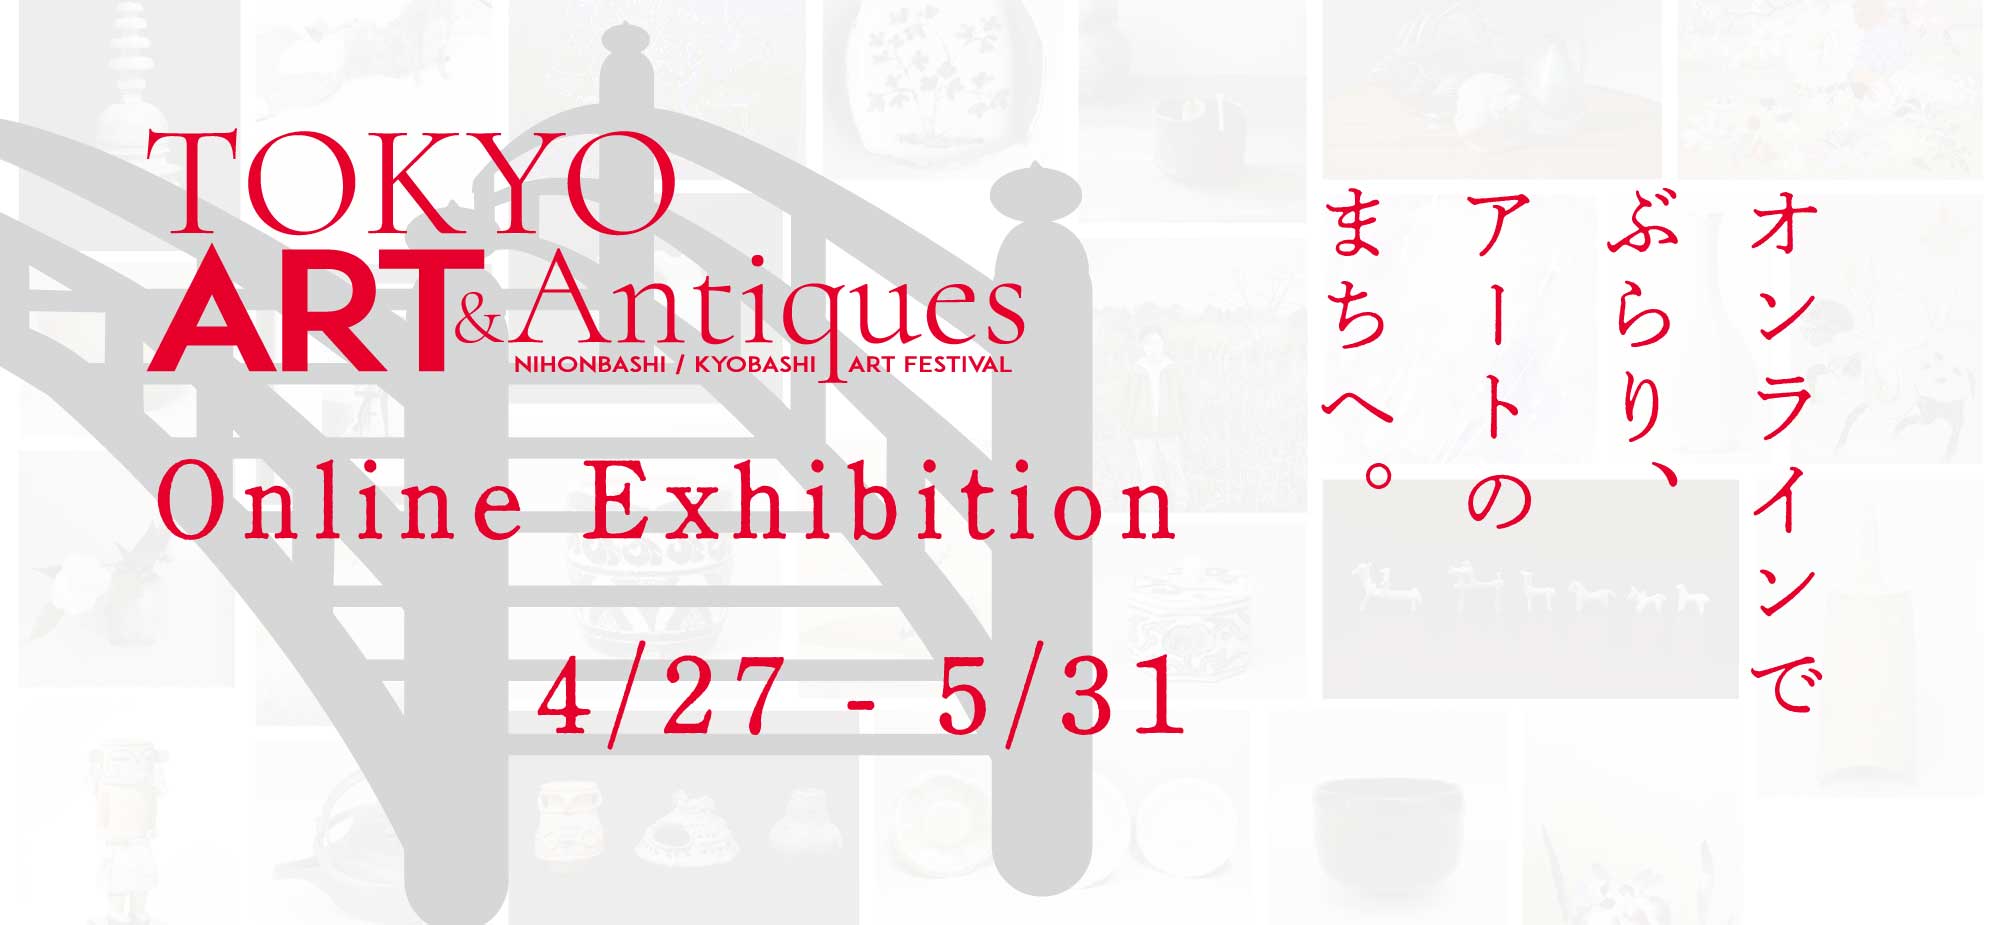 Online Exhibition 4/27 - 5/31